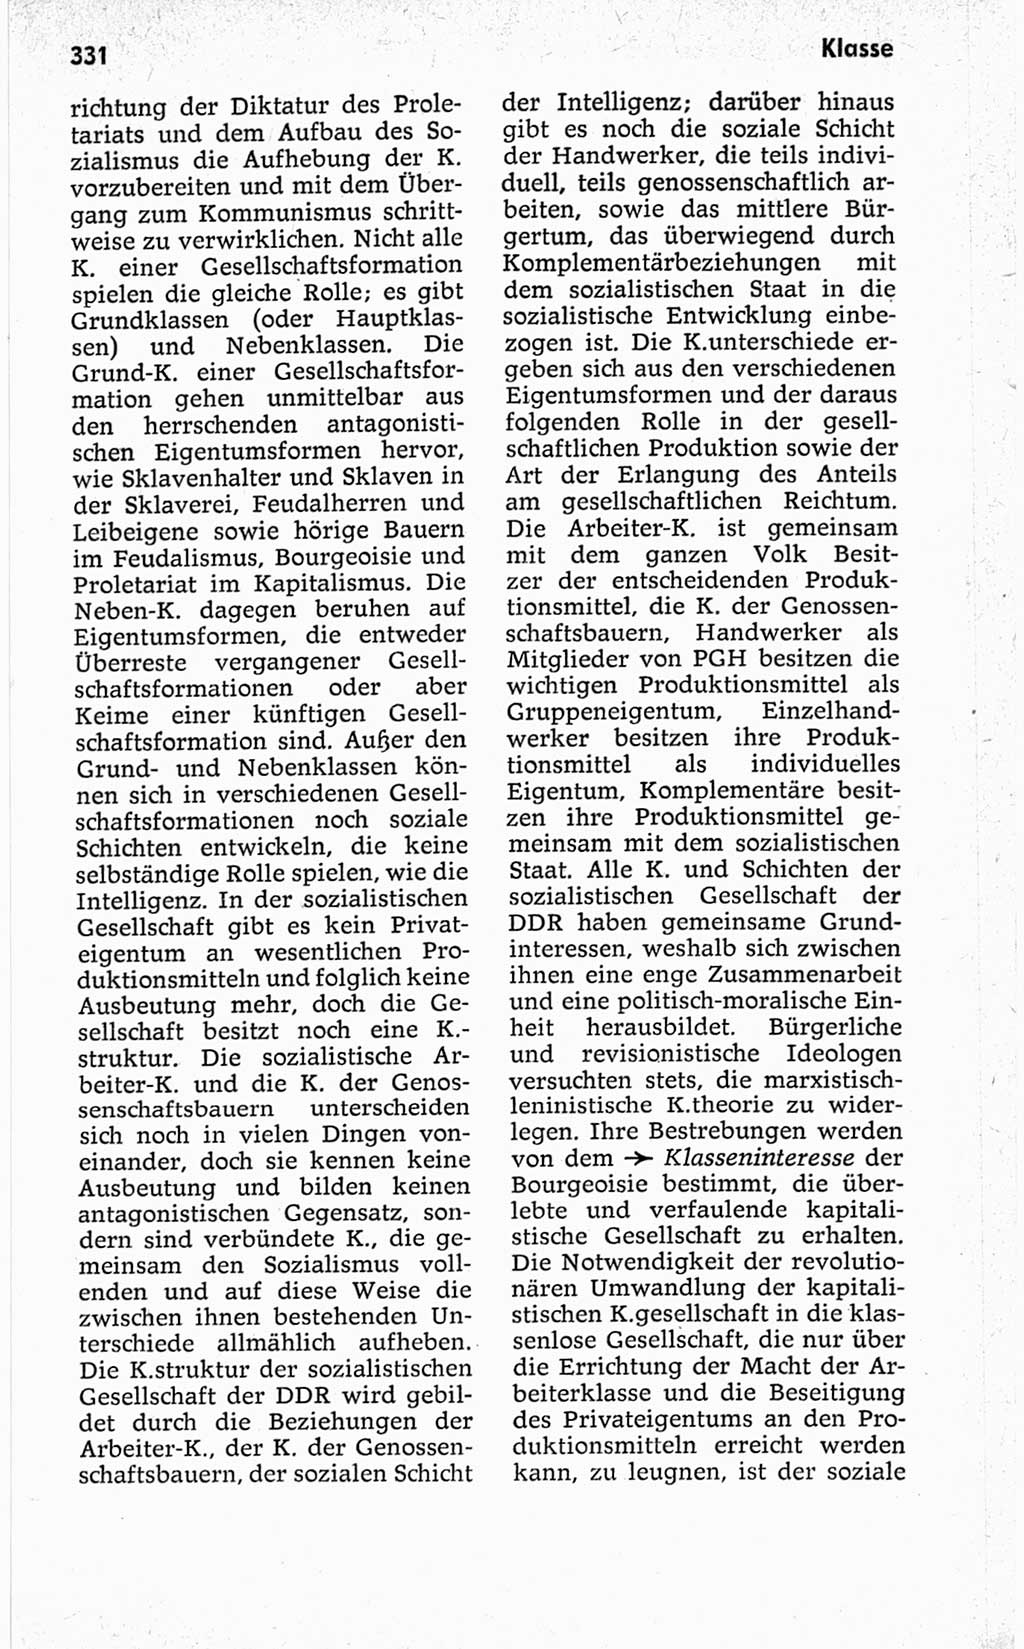 Kleines politisches Wörterbuch [Deutsche Demokratische Republik (DDR)] 1967, Seite 331 (Kl. pol. Wb. DDR 1967, S. 331)